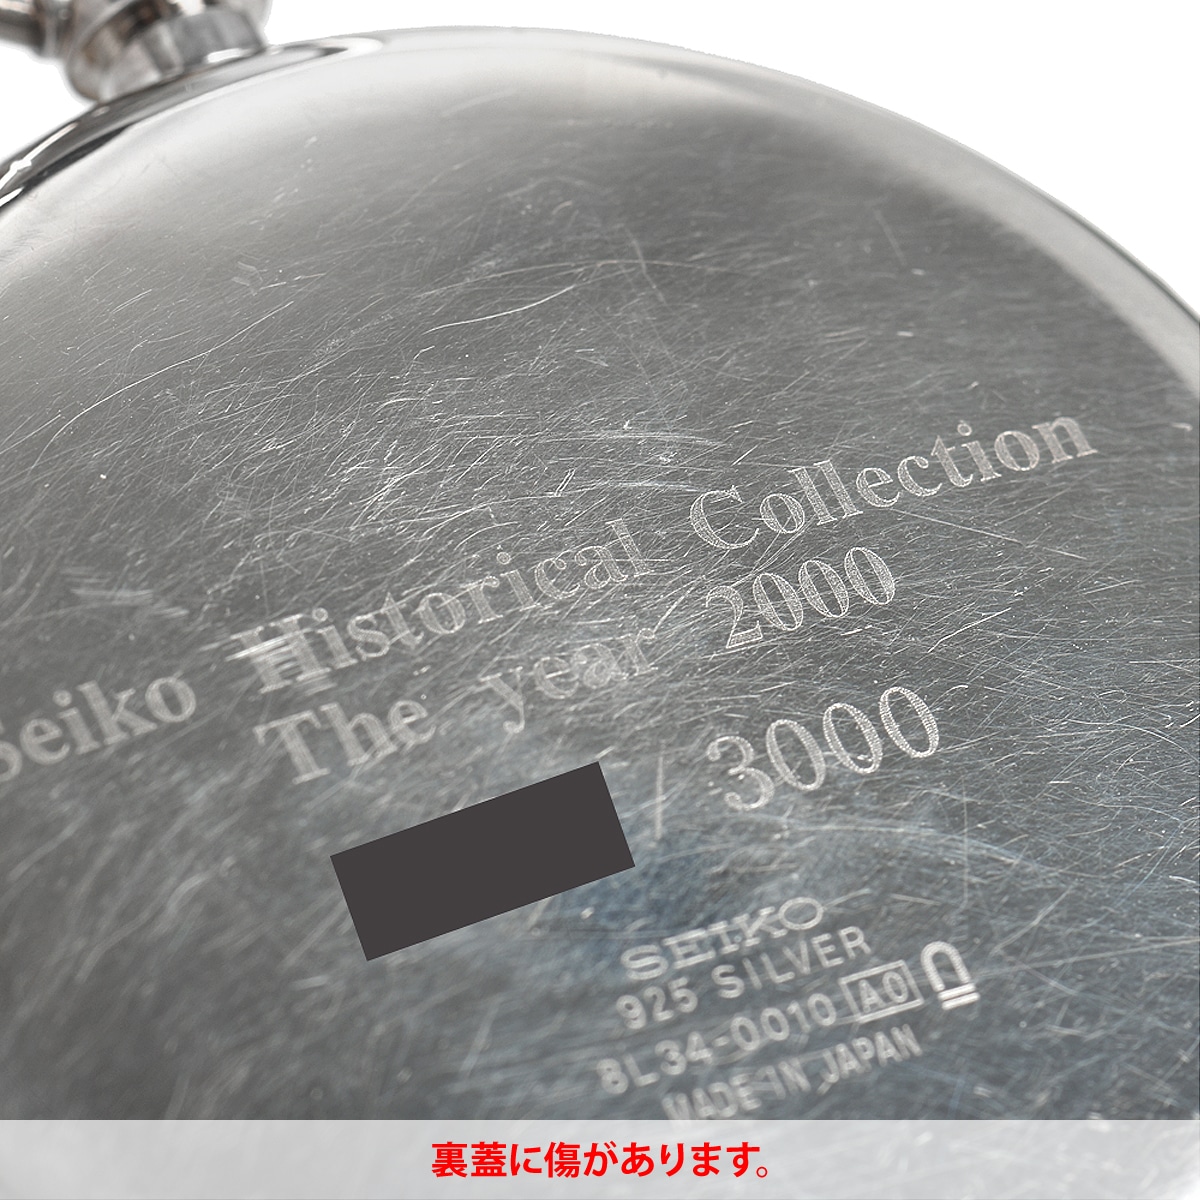 中古 563011001 SCVR001 8L34-0010 ヒストリカルコレクション 鉄道時計